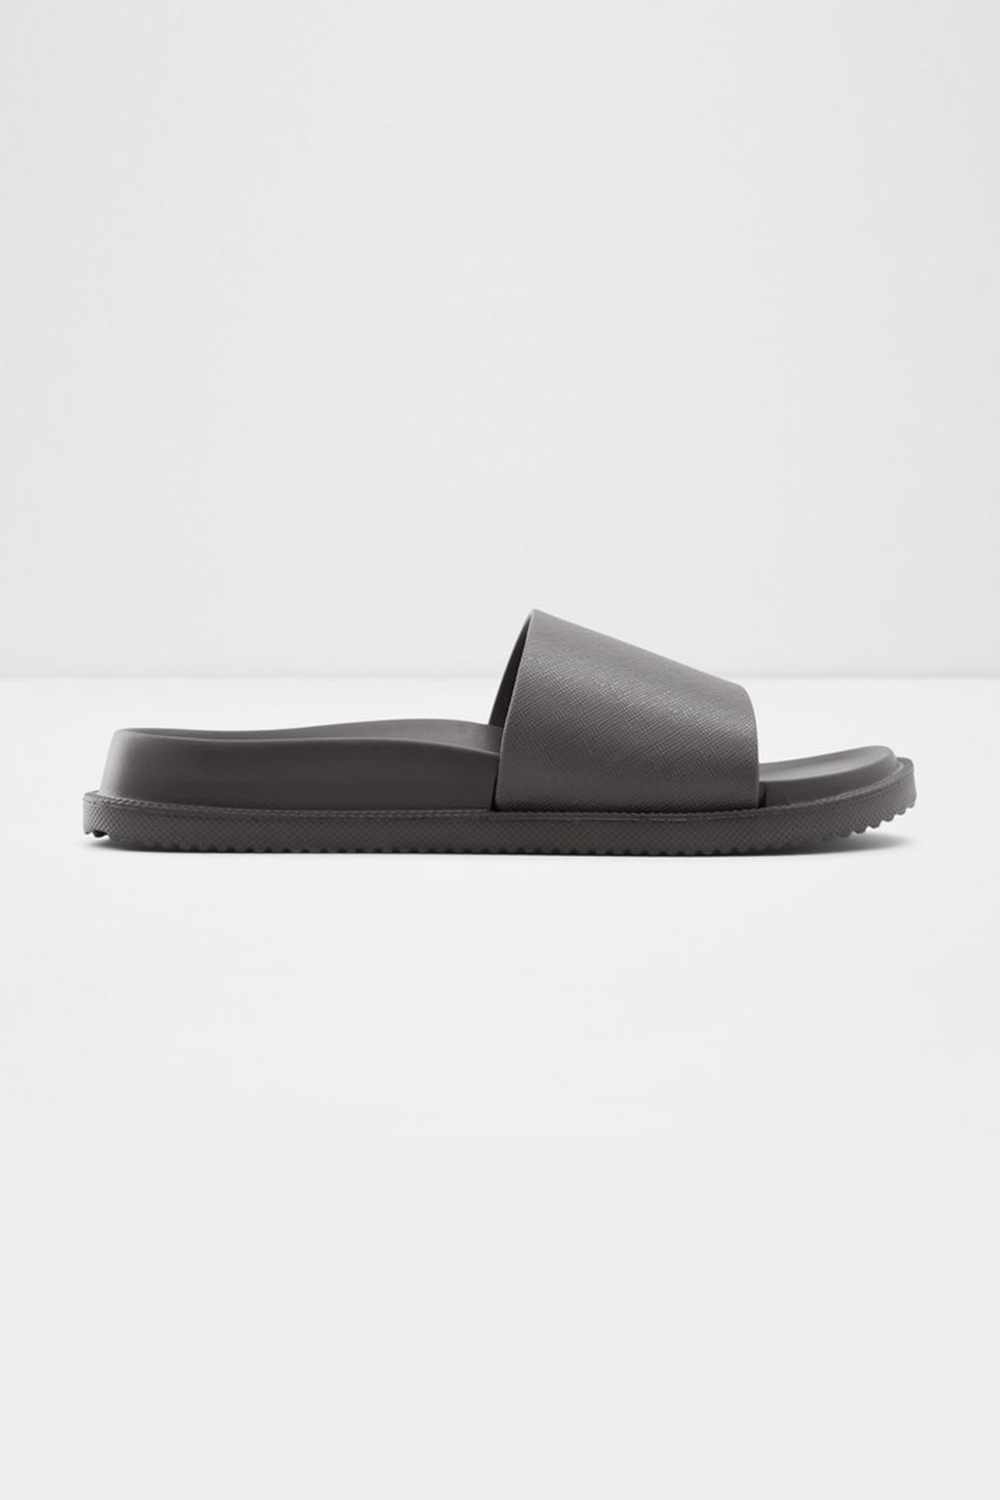 Aldo Wica Men's Sandals | Odel.lk